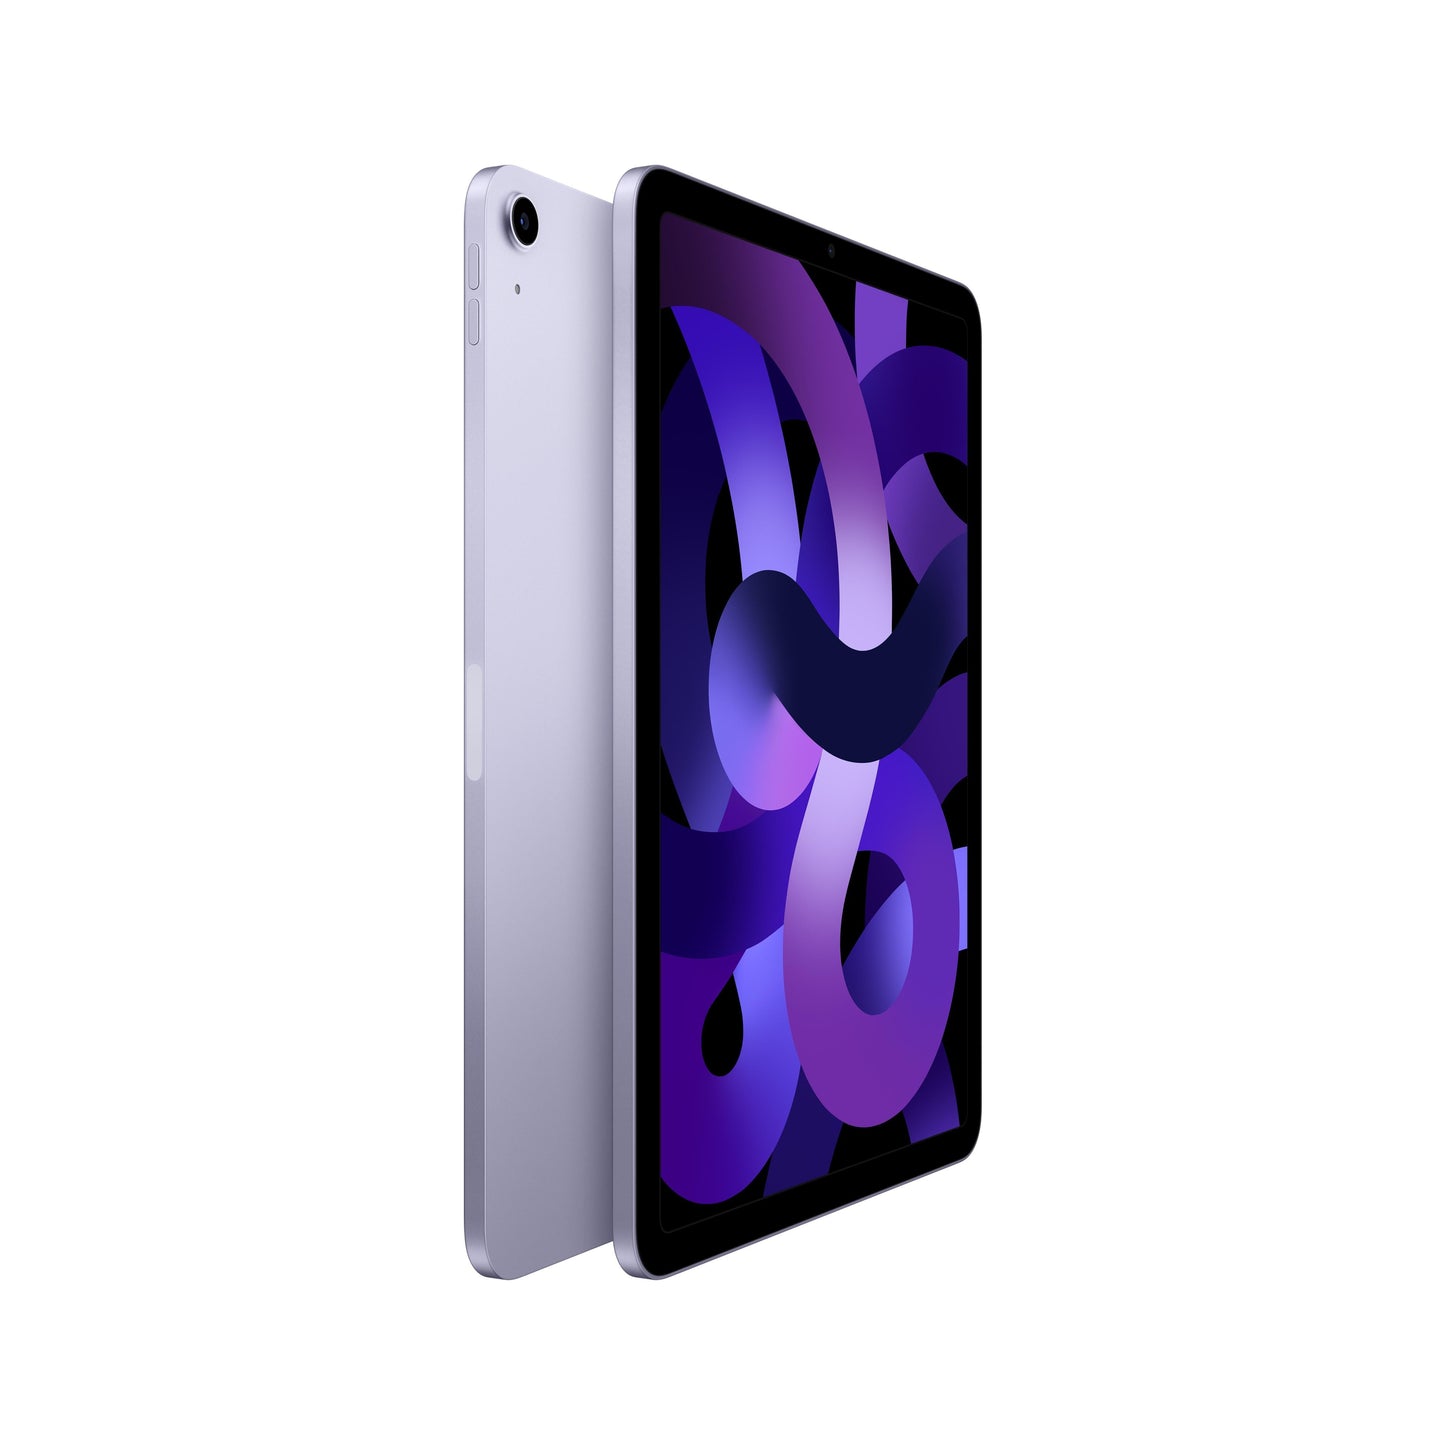 2022 iPad Air Wi-Fi 256GB - Purple (5th generation)